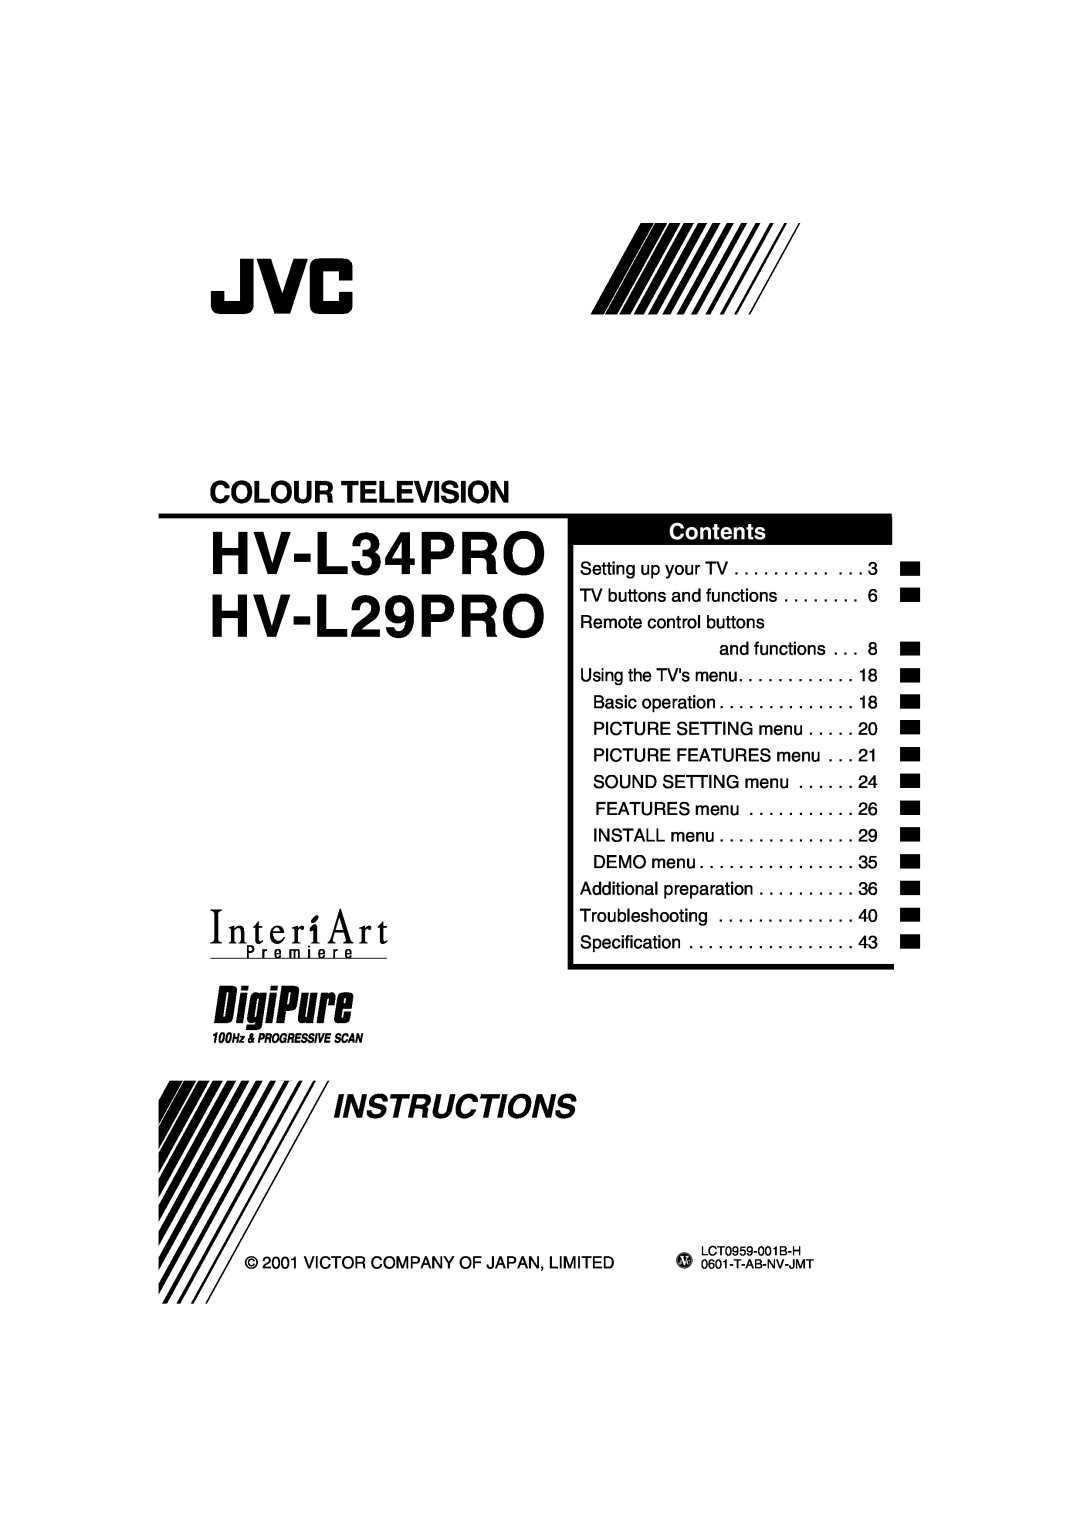 JVC manual HV-L34PRO HV-L29PRO, Instructions, Colour Television, Contents 